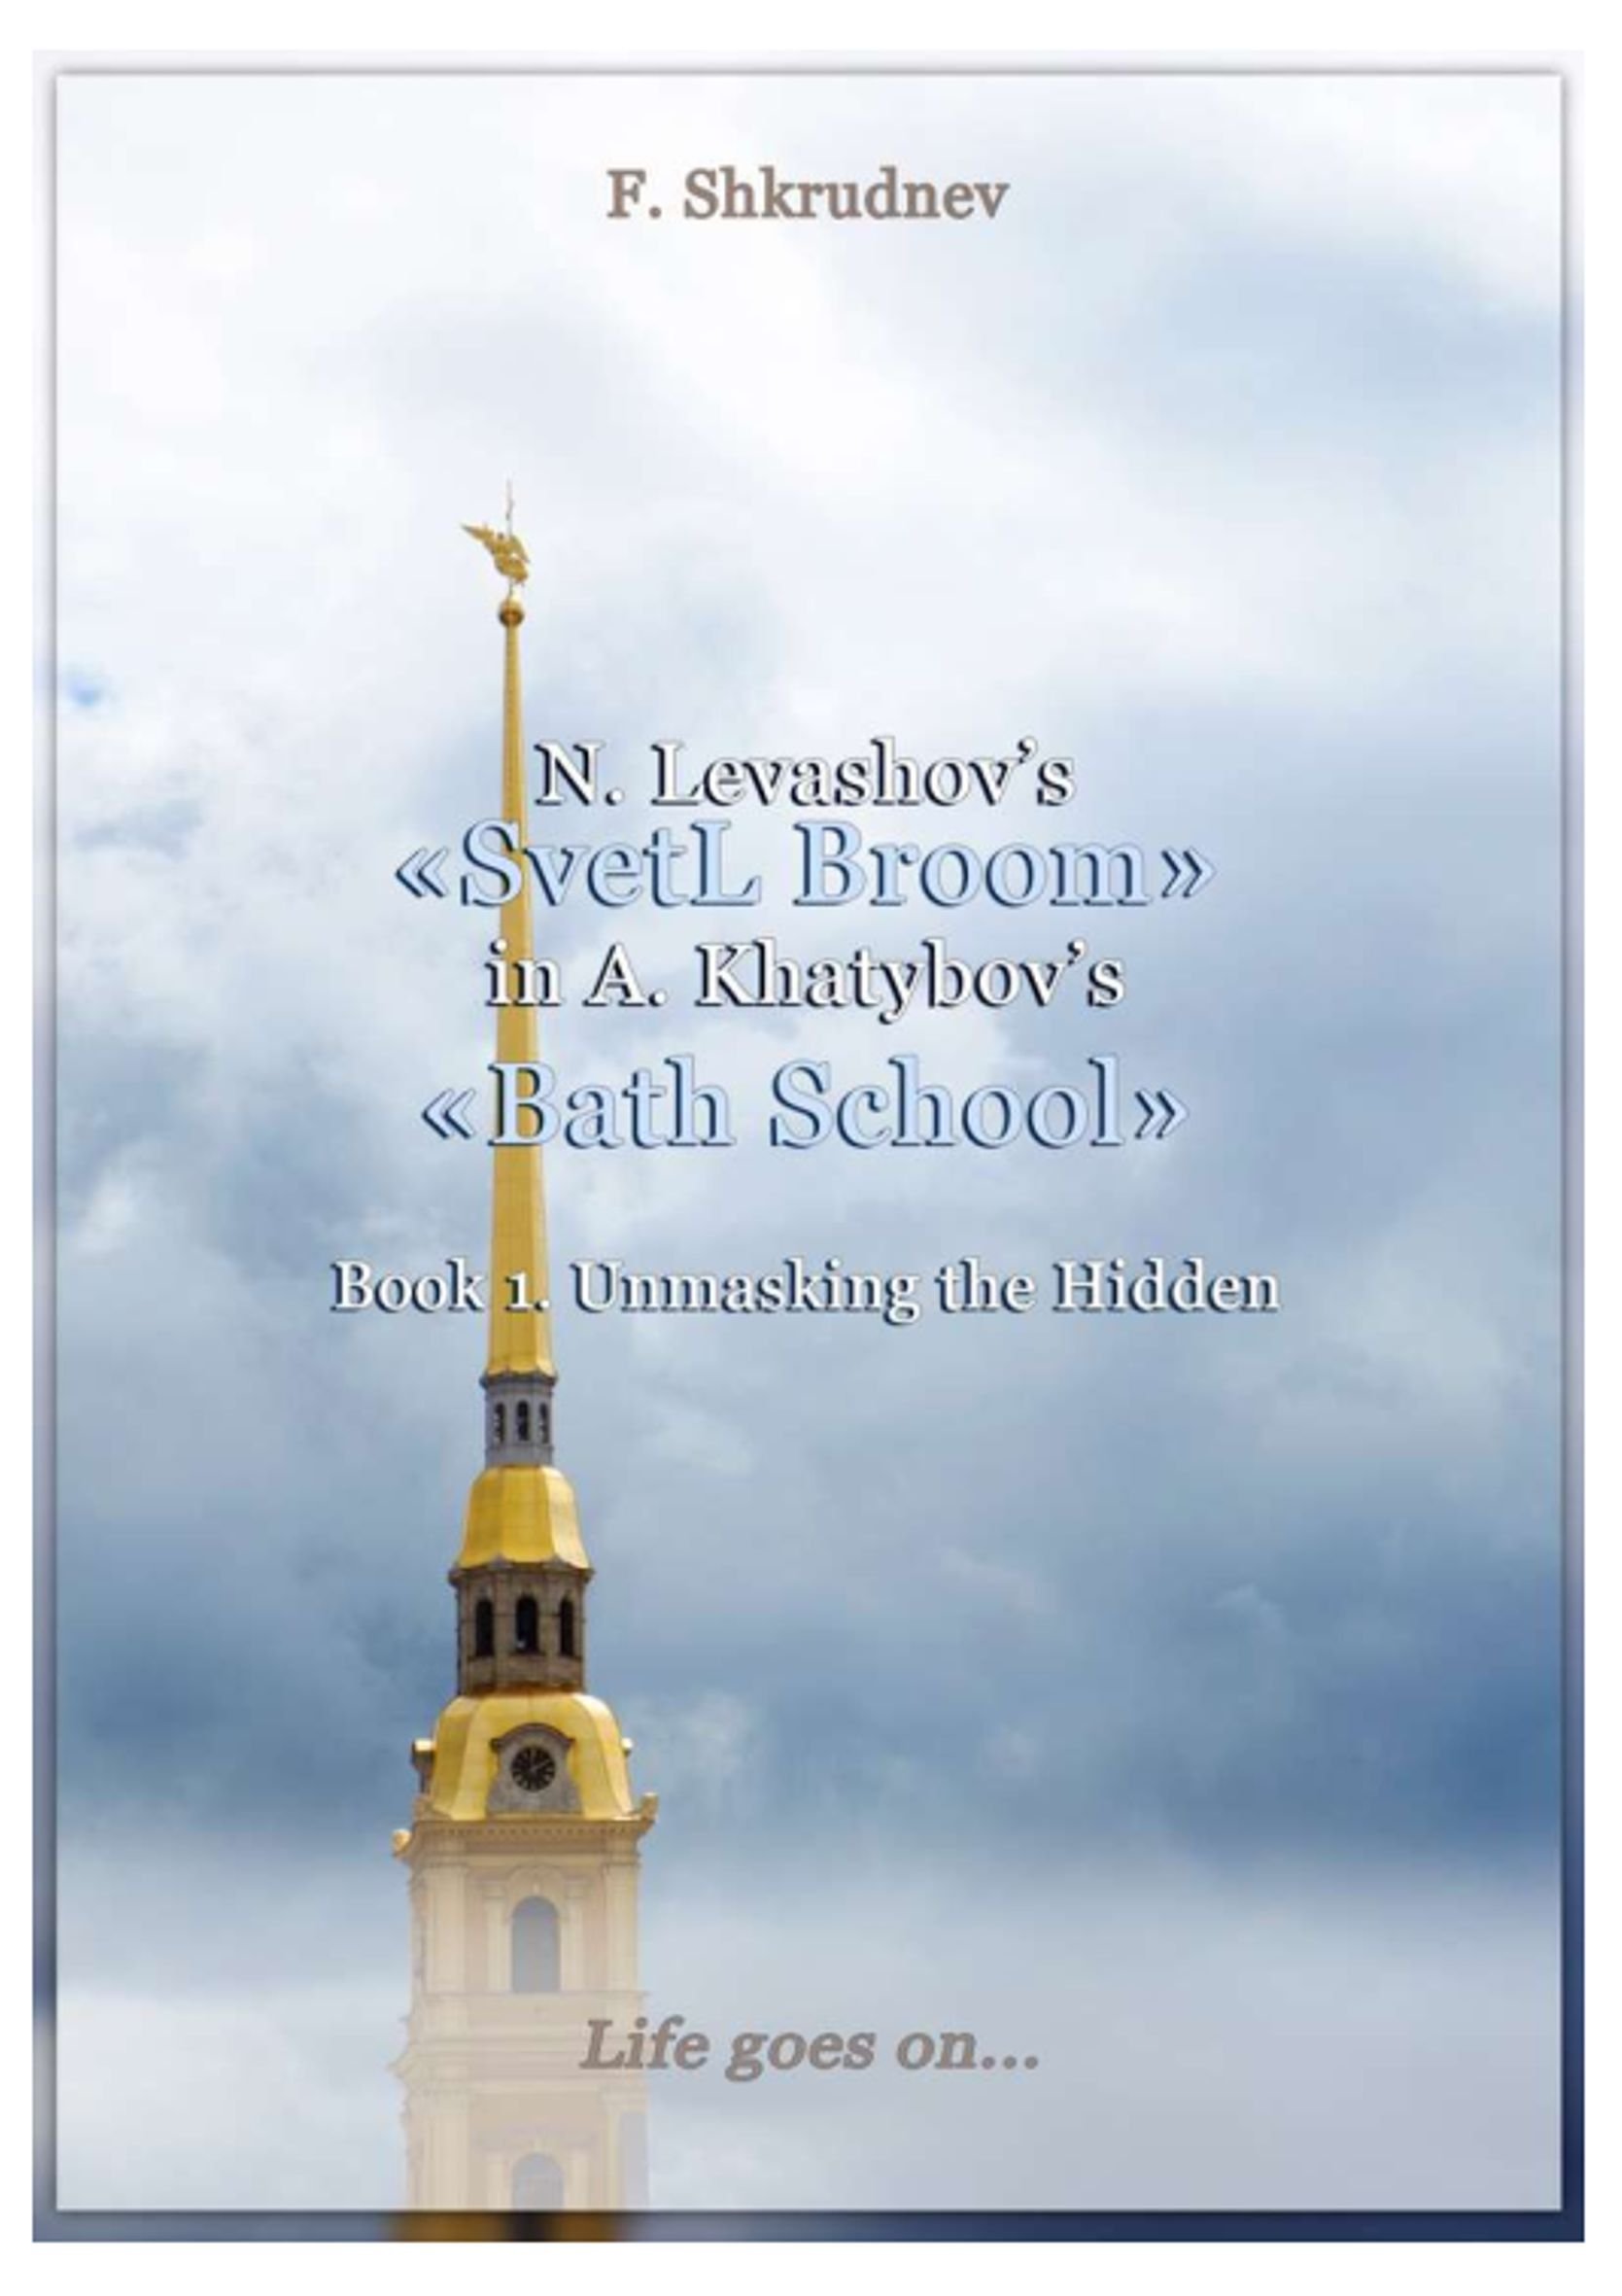 N. LEVASHOV'S «SVETL BROOM» IN A. KHATYBOV'S «BATH SCHOOL» AND A LABOUR SPADE. BOOK 2. THE BATH SCHOOL